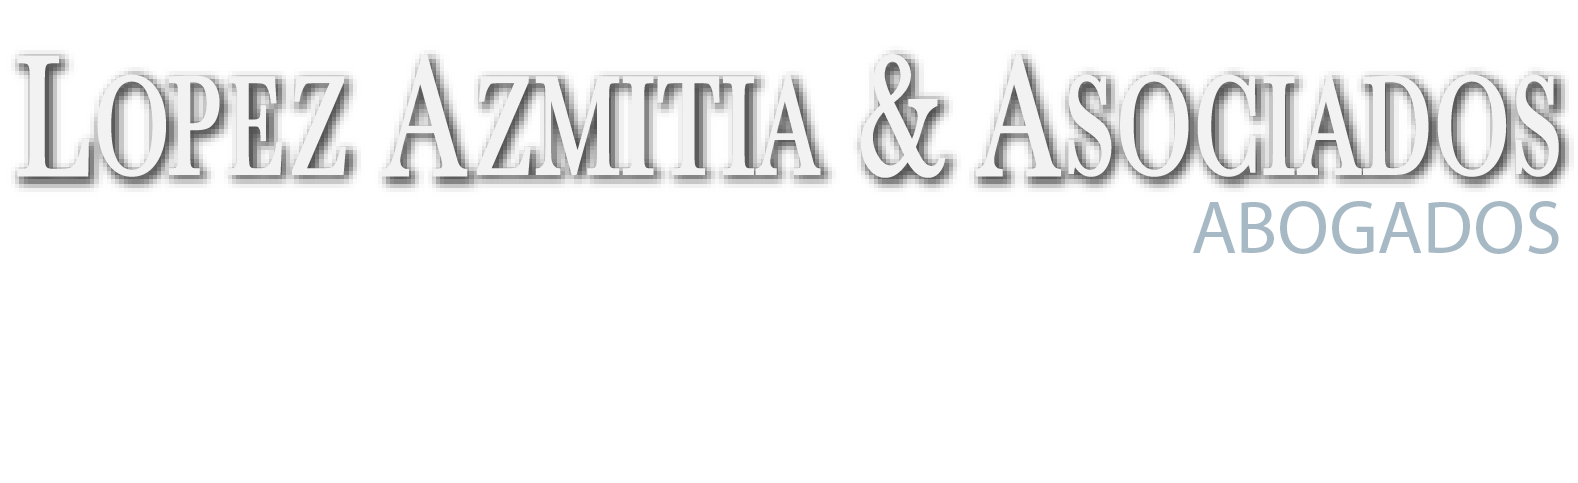 Lopez Azmitia & Asociados